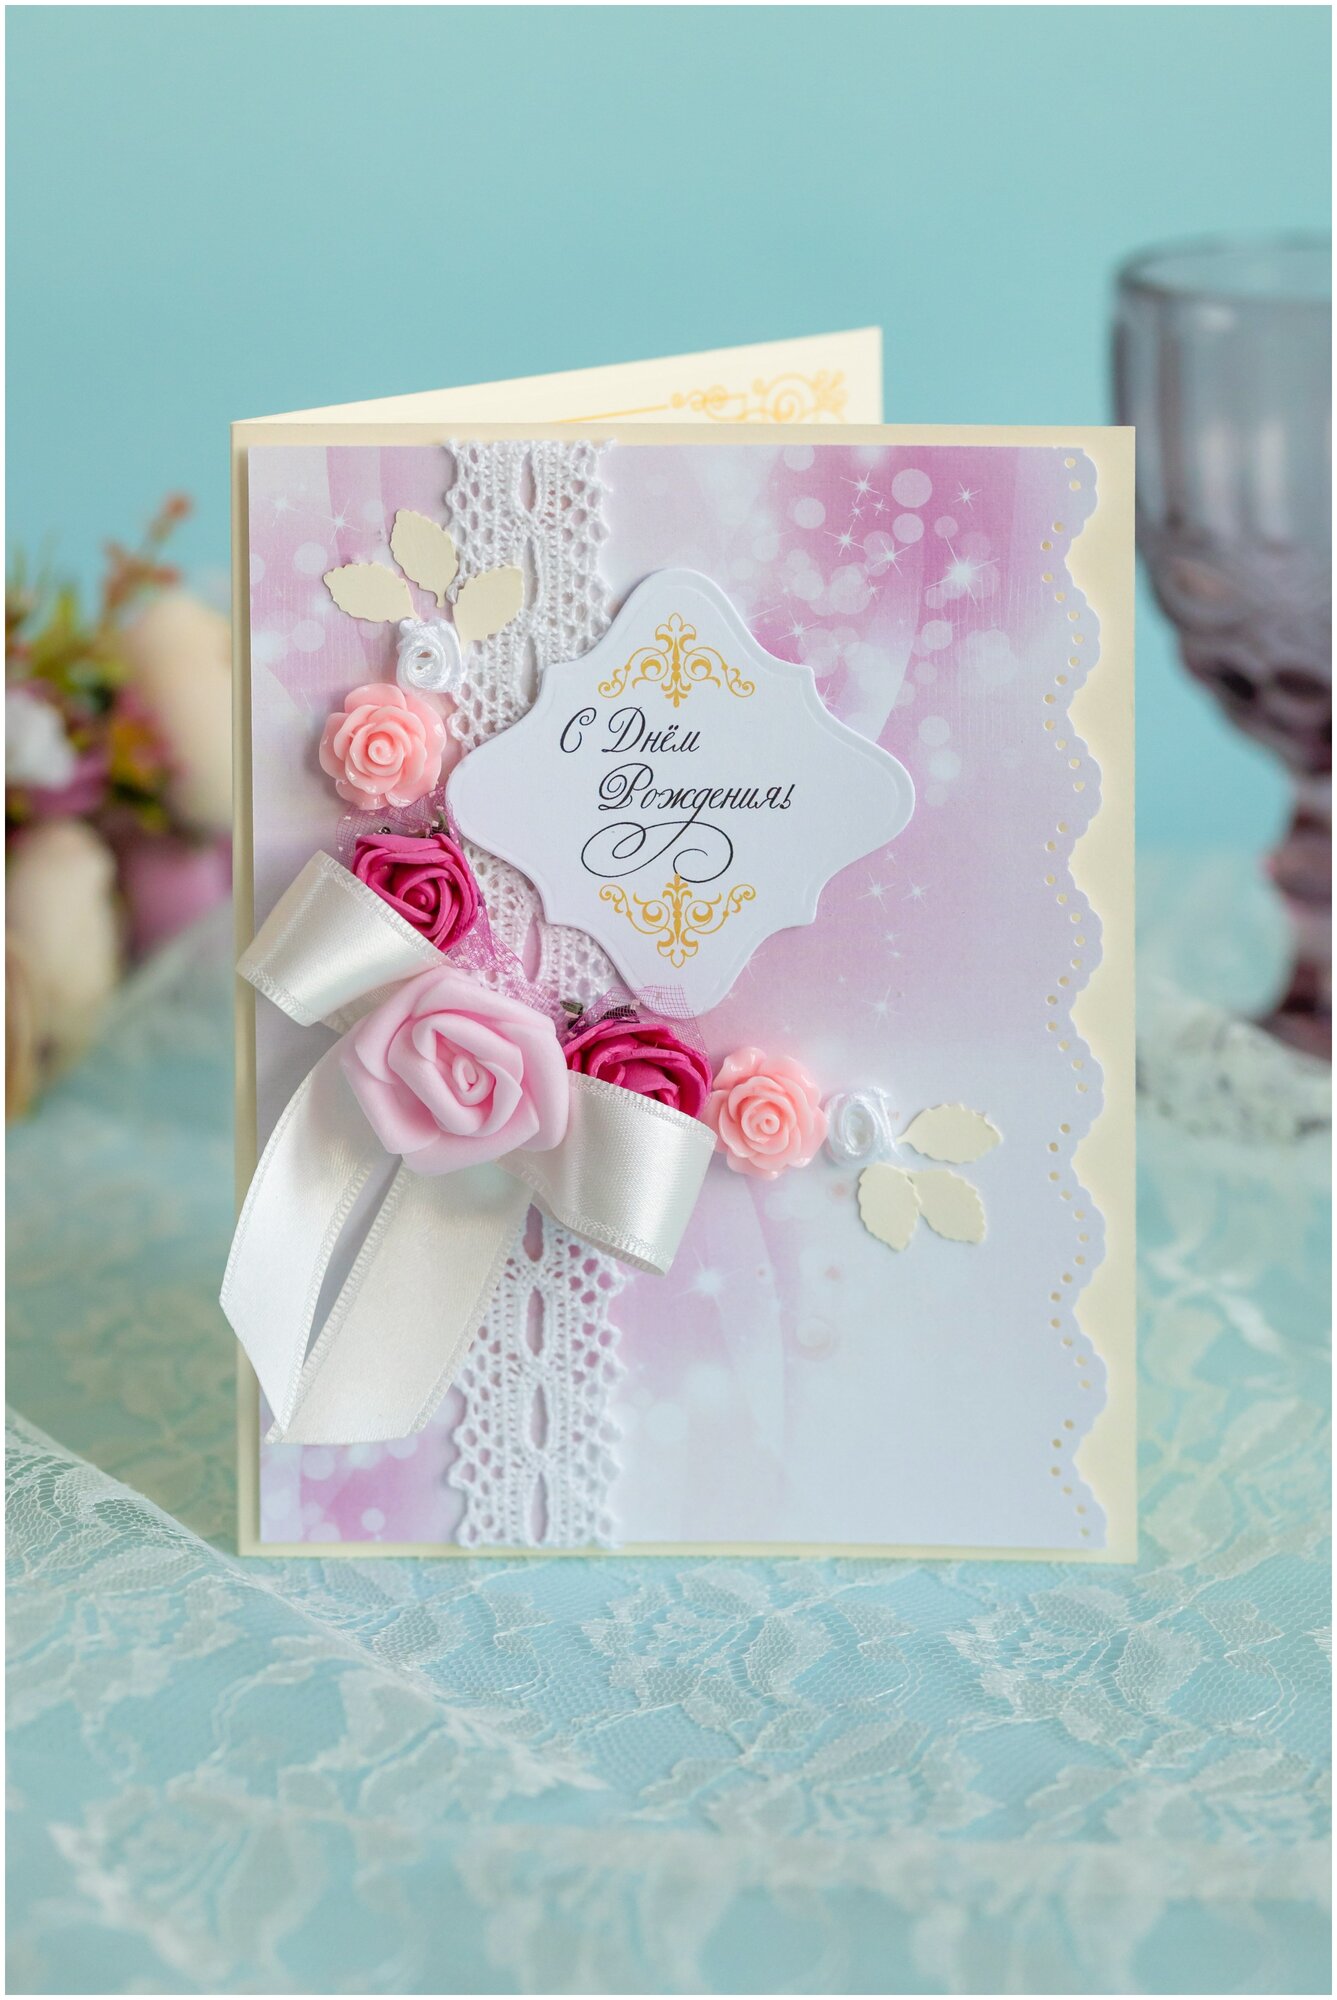 Открытка ручной работы "С днем рождения" в розовых тонах с белыми атласным бантом и искусственными розами